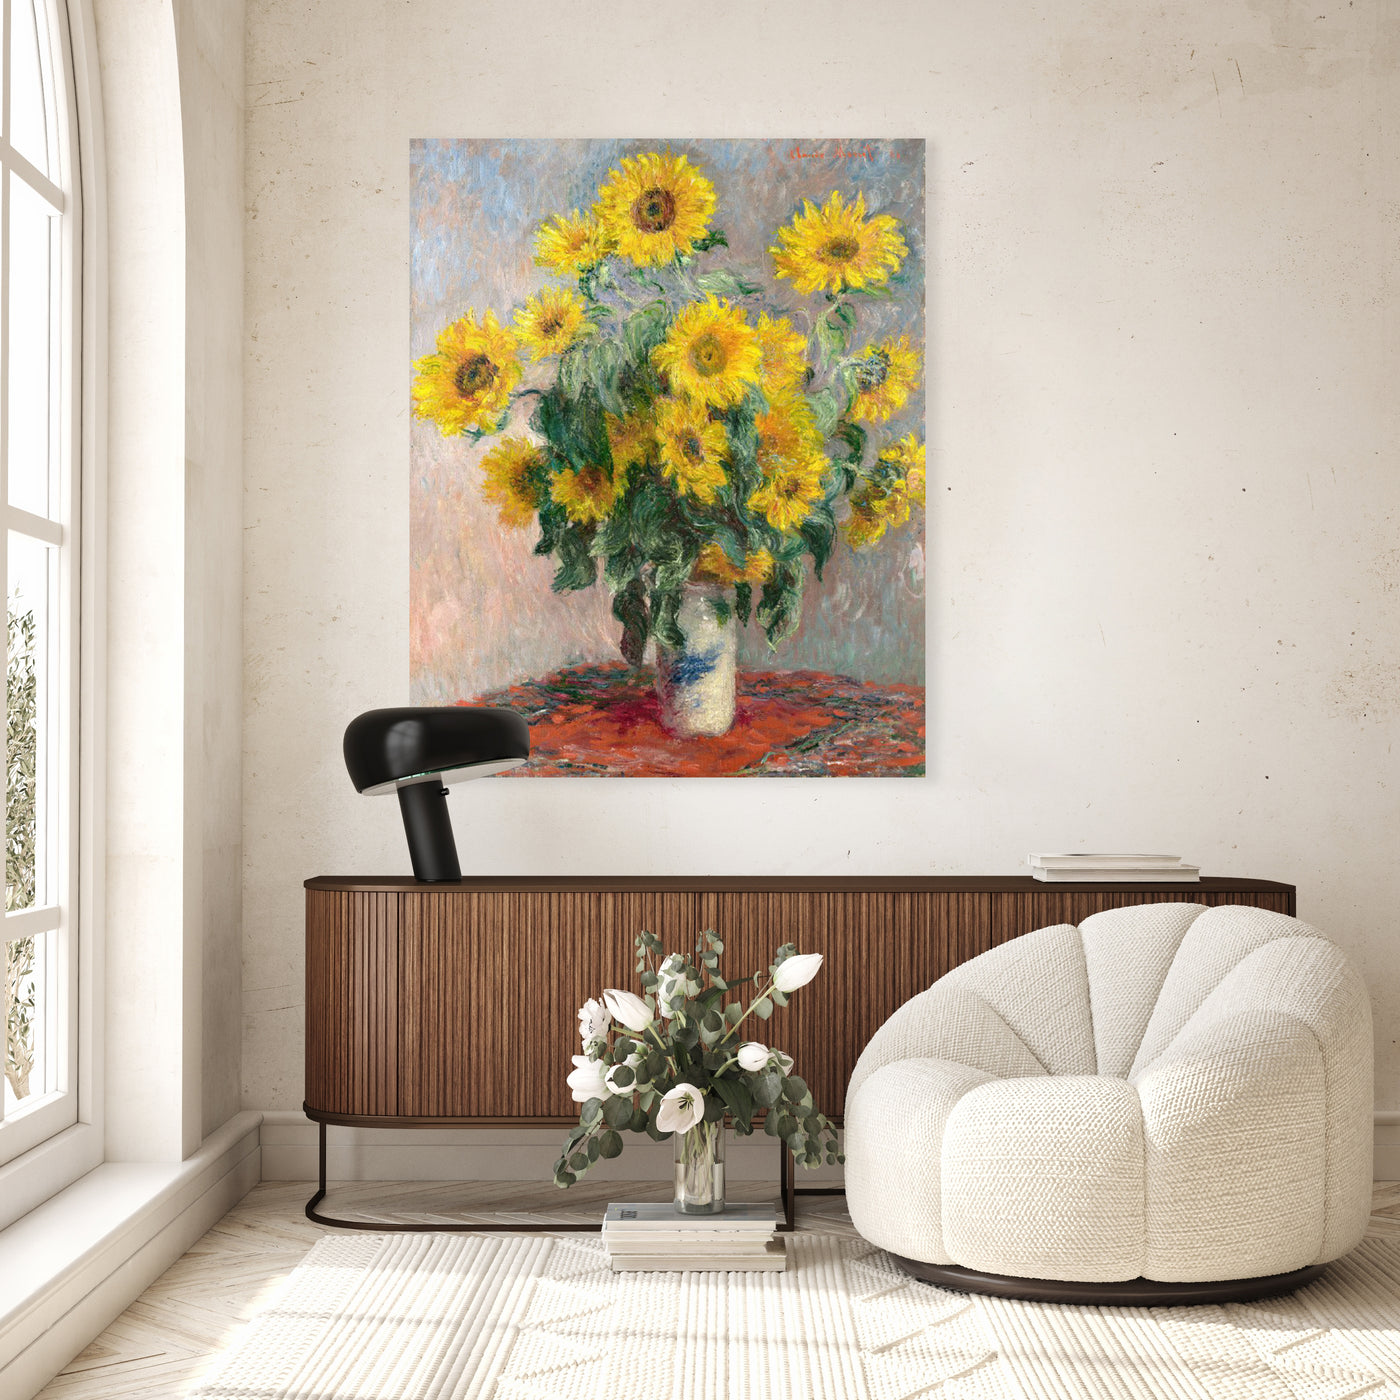 Claude Monet - Blumenstrauß mit Sonnenblumen